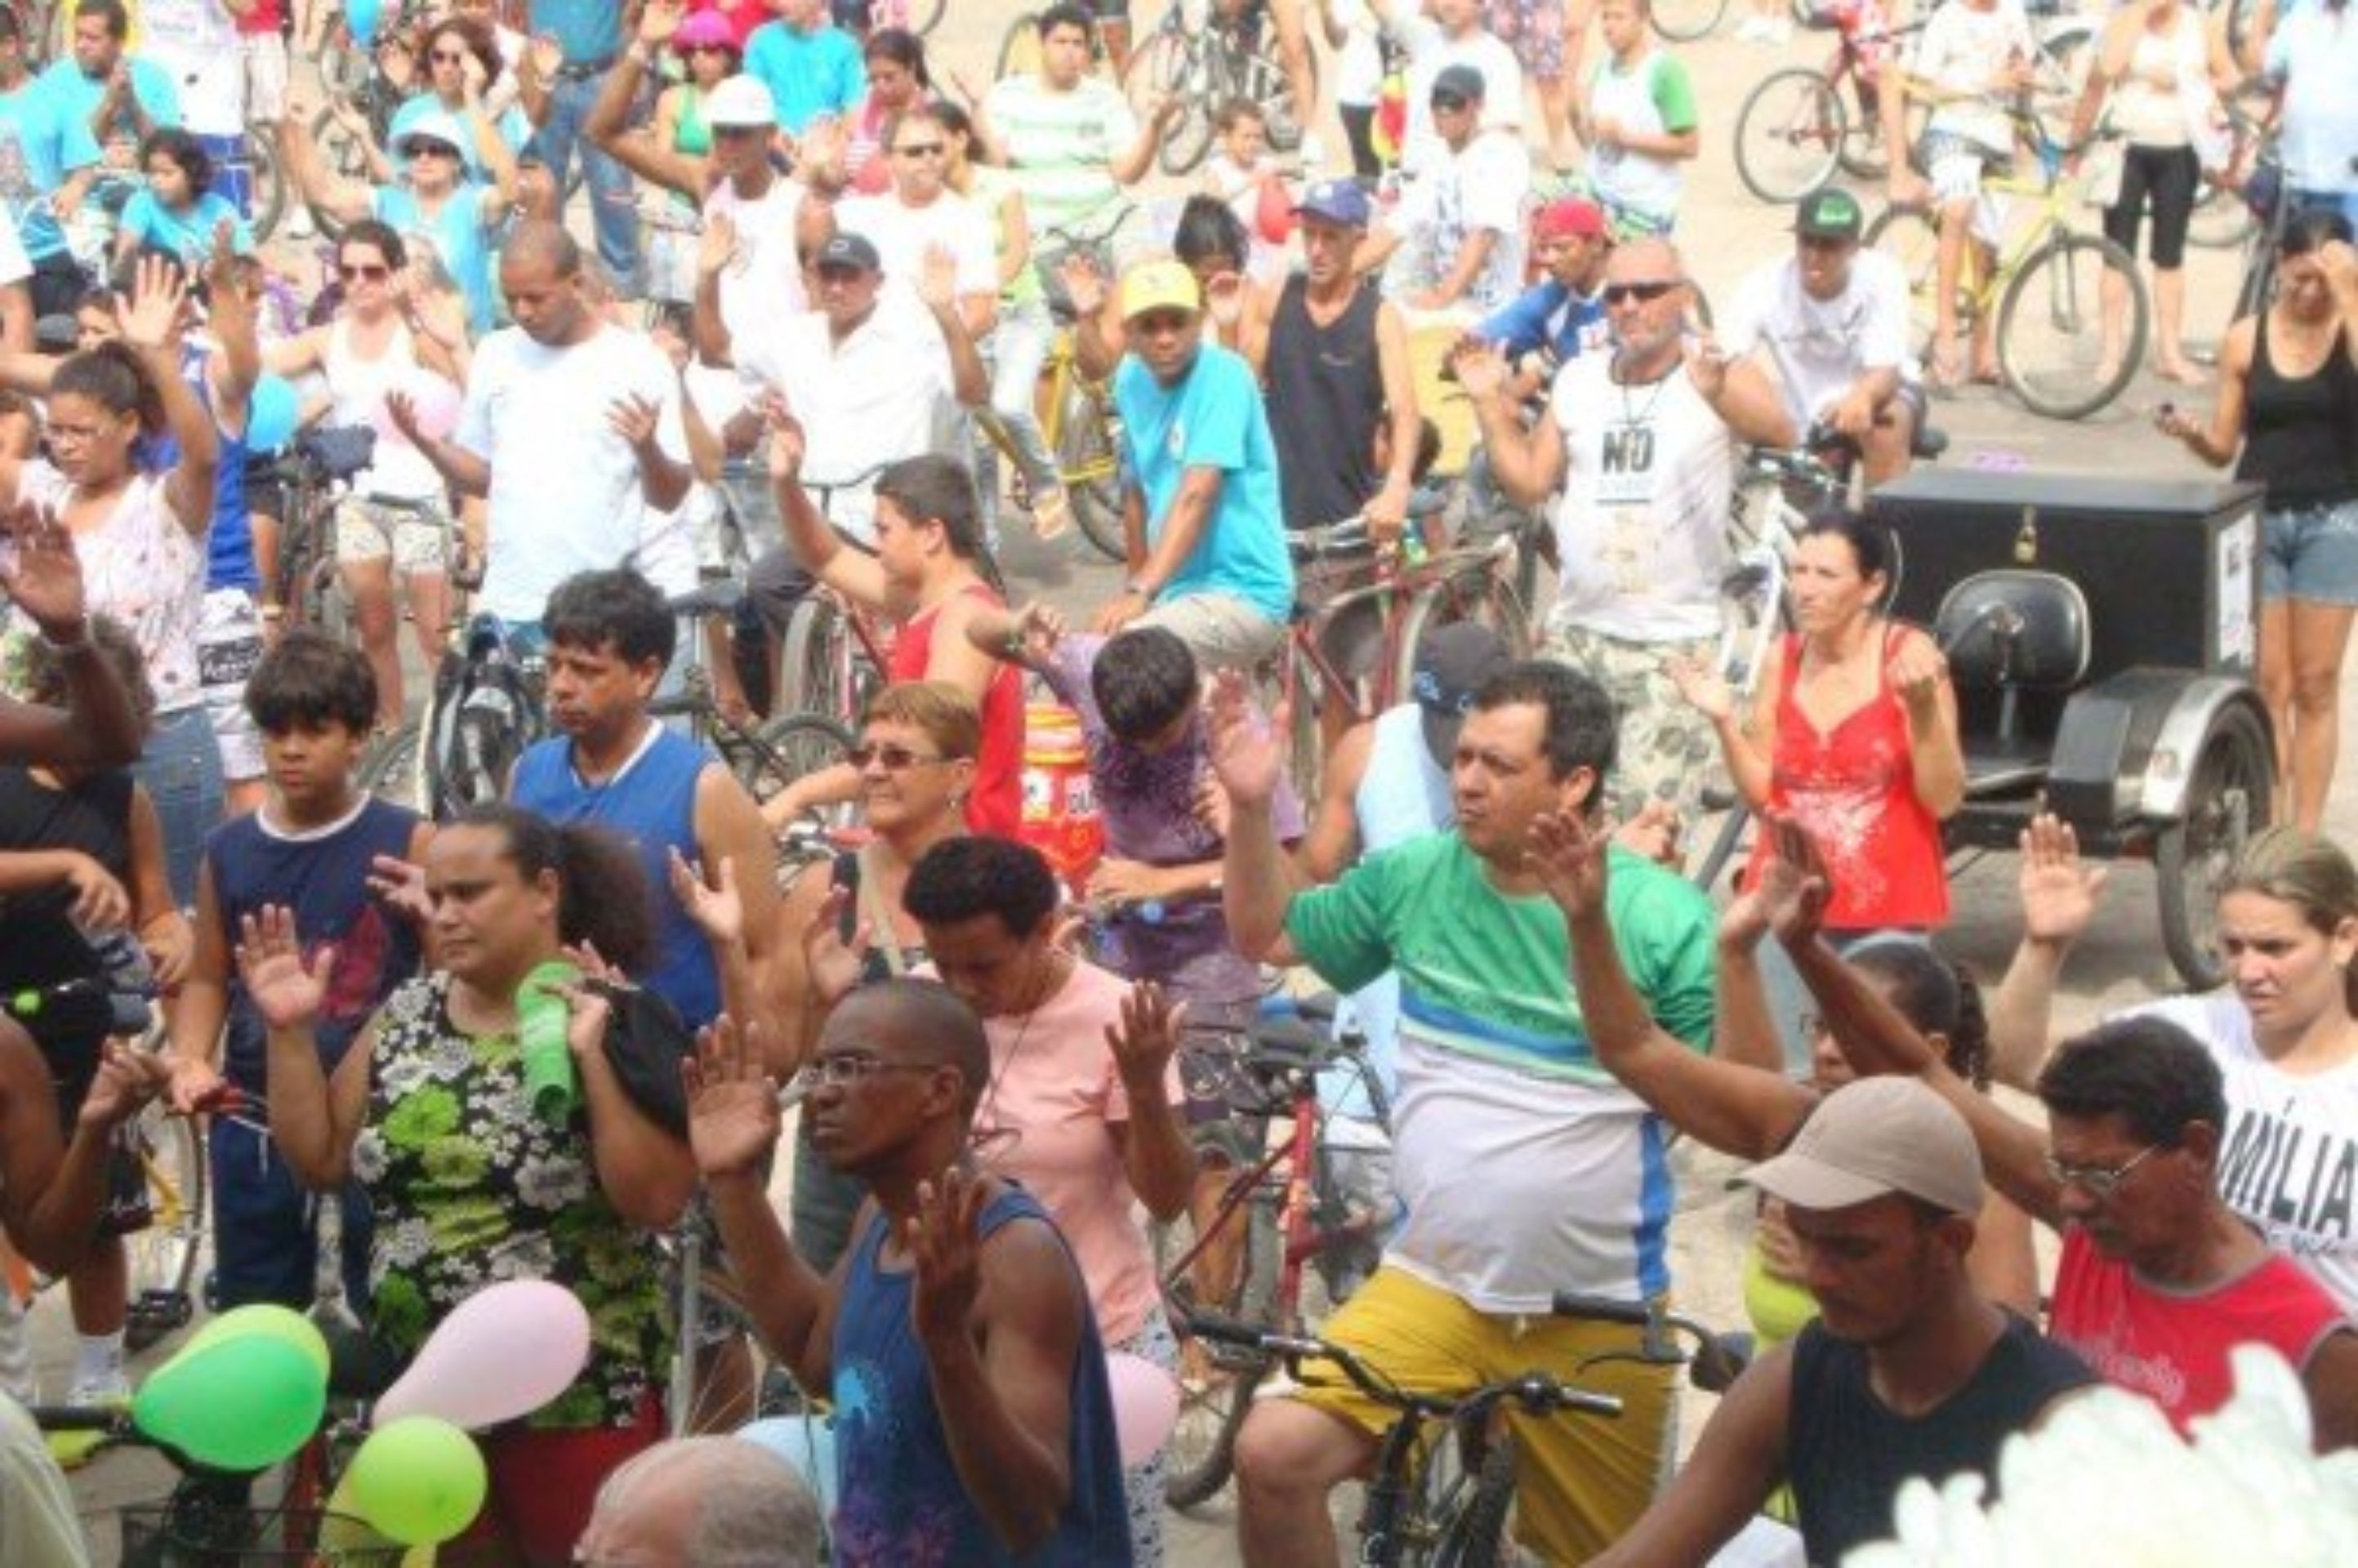 2012 - Romaria dos Ciclistas